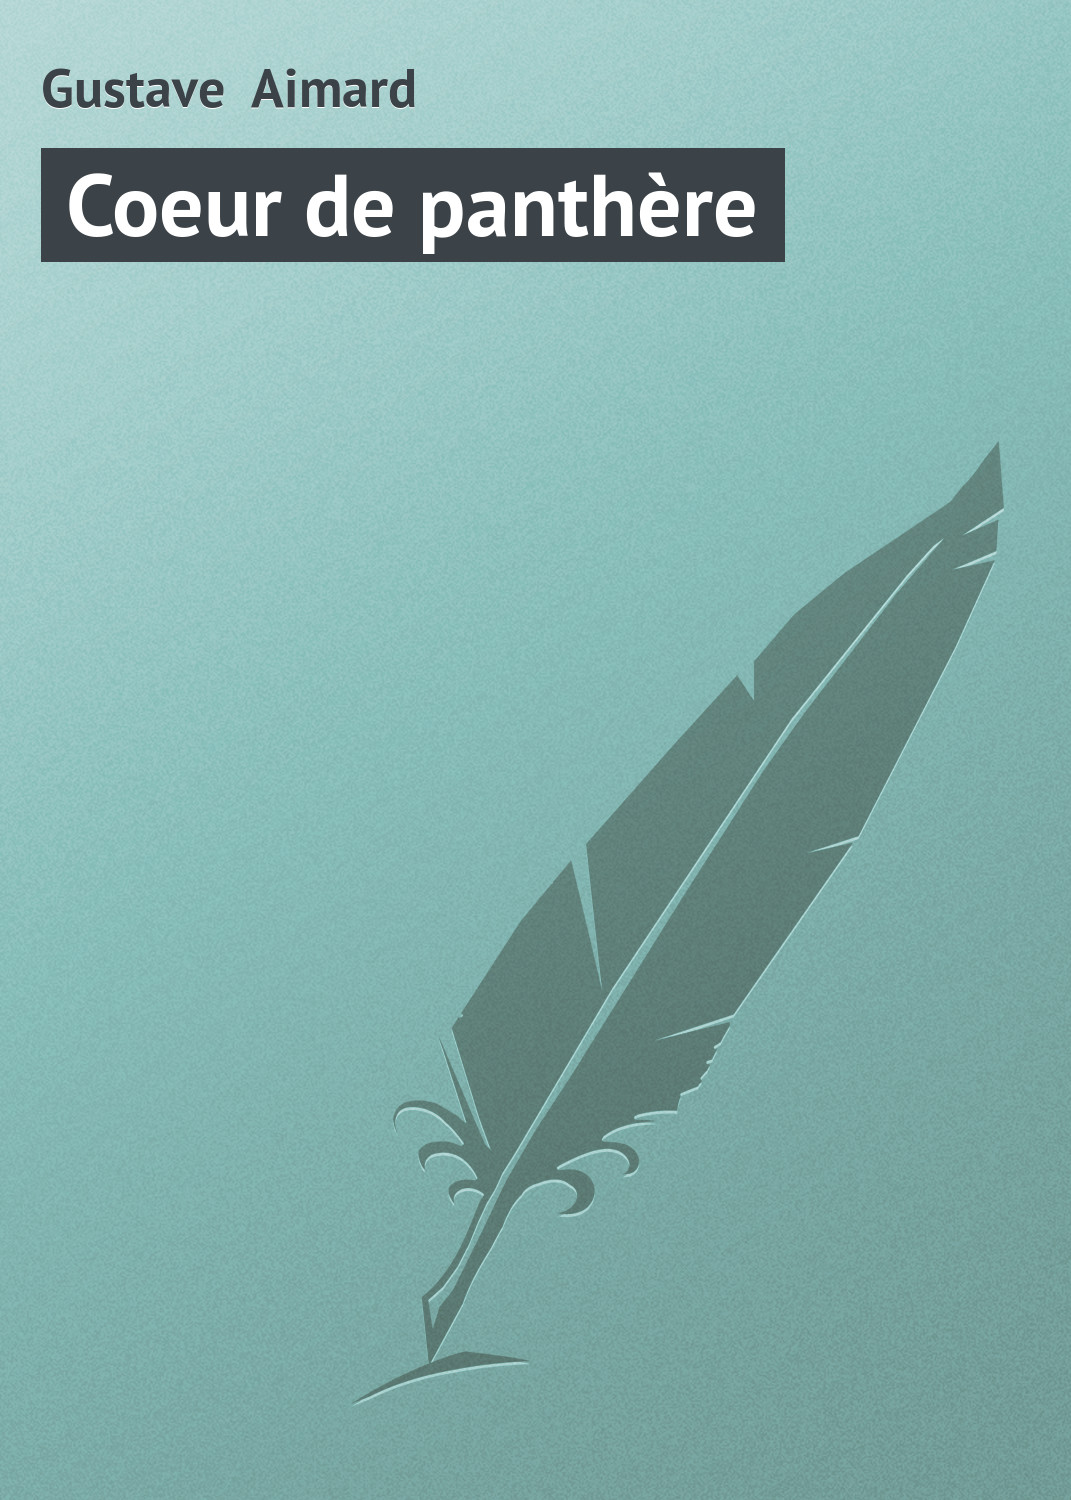 Книга Coeur de panthère из серии , созданная Gustave Aimard, может относится к жанру Зарубежная старинная литература, Зарубежная классика. Стоимость электронной книги Coeur de panthère с идентификатором 21105958 составляет 5.99 руб.